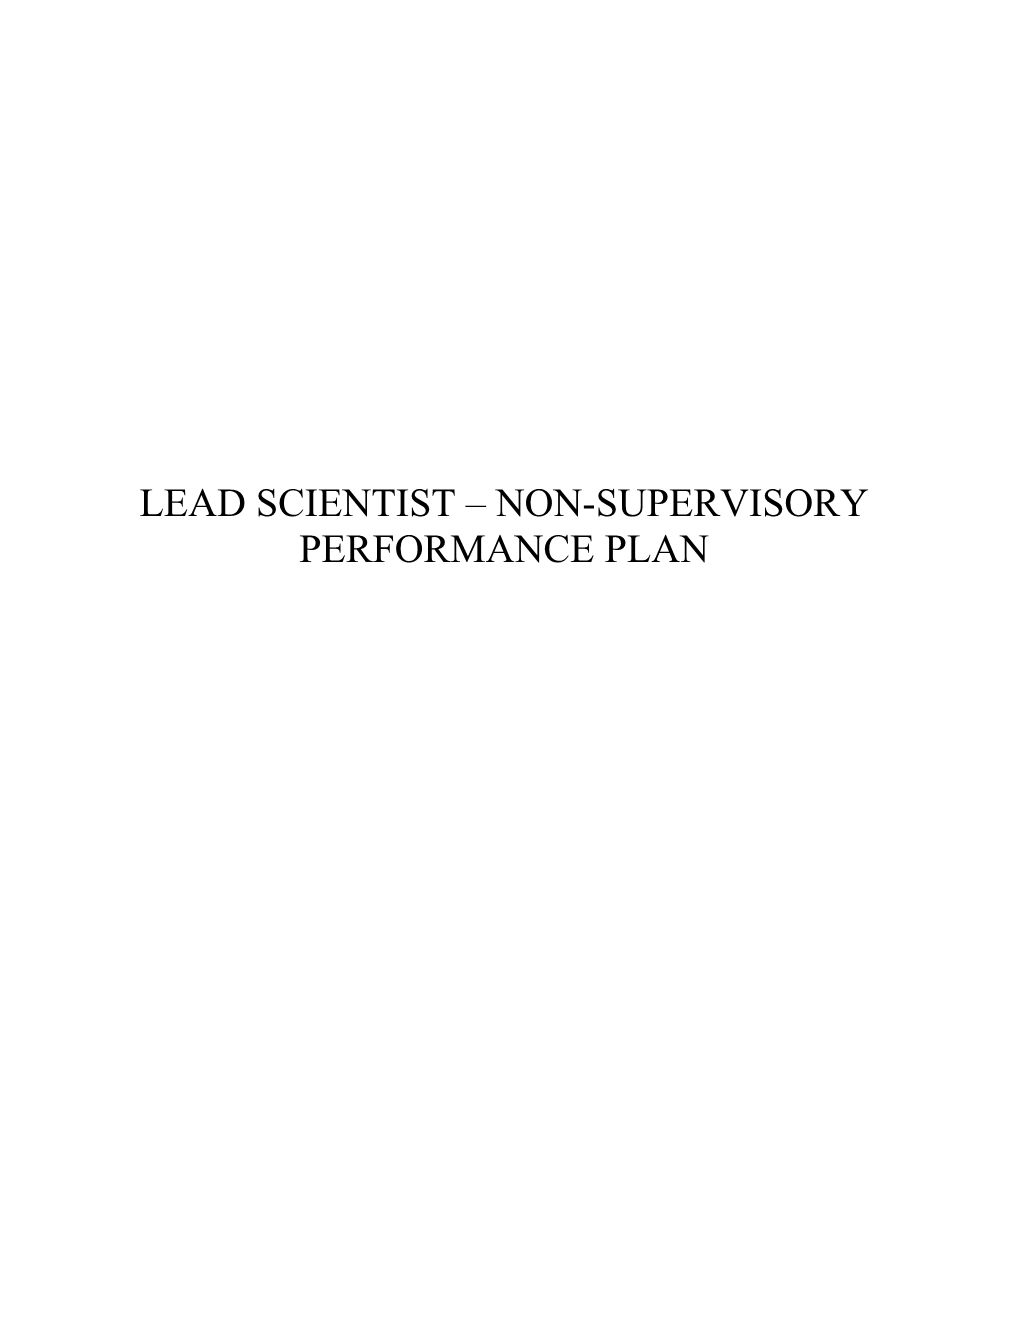 Lead Scientist Non-Supervisory